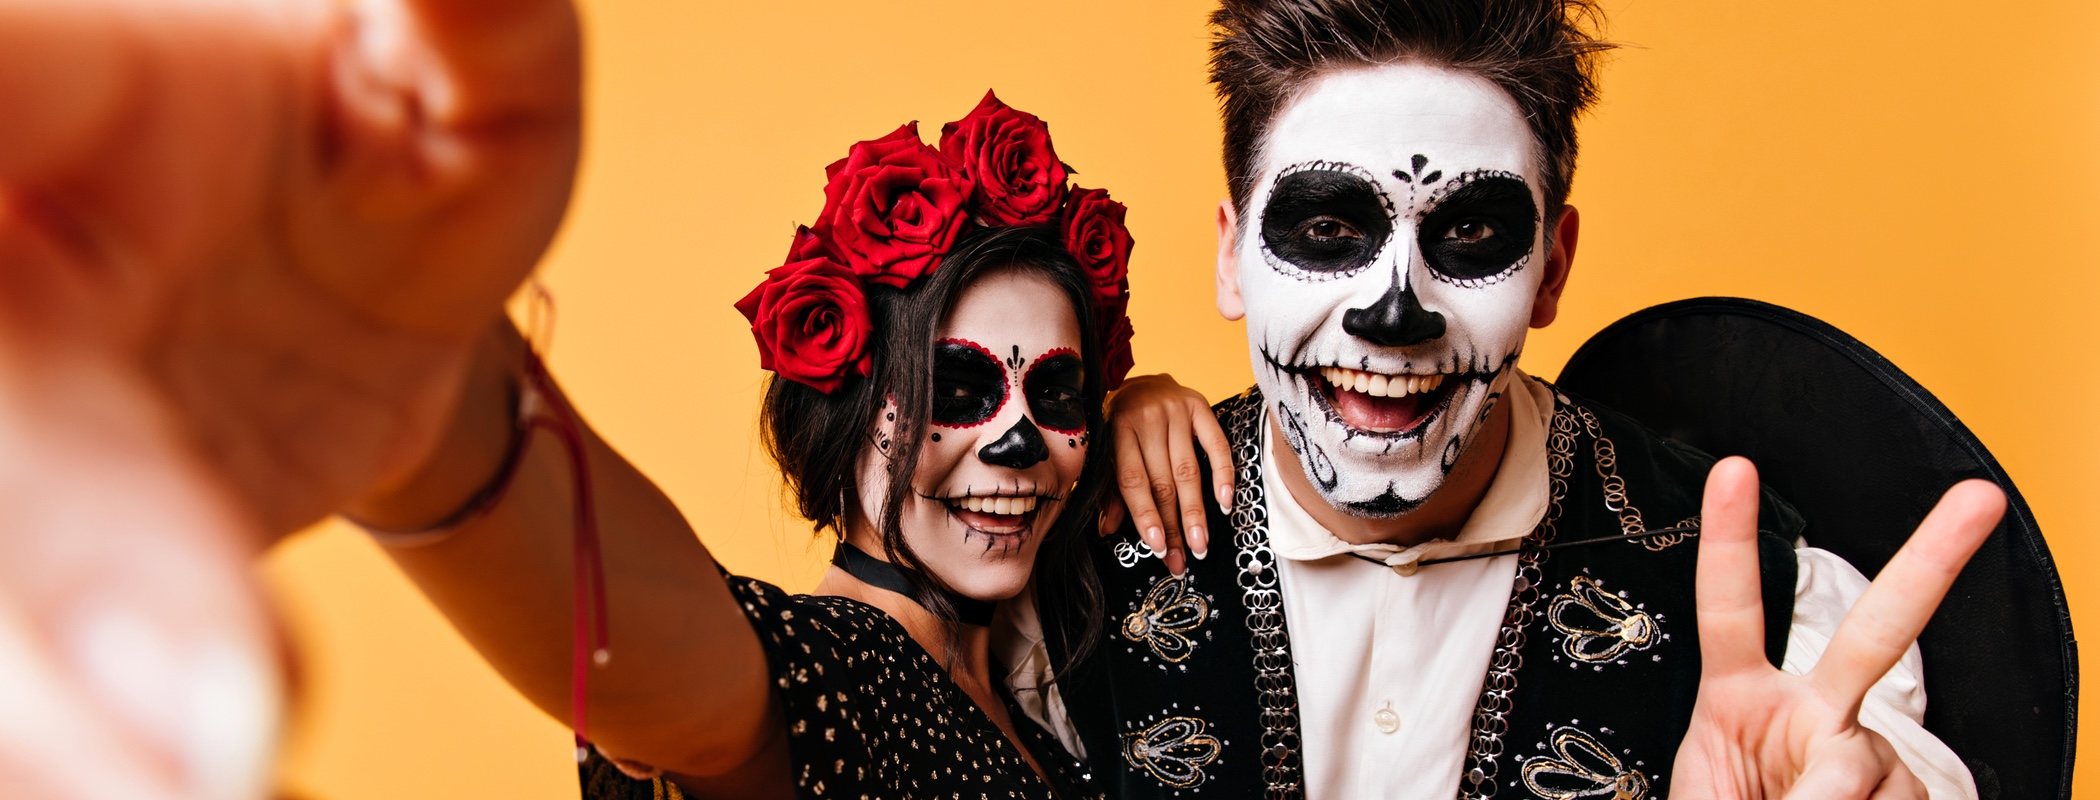 4 ideas para celebrar Halloween en pareja y no morir en el intento - Bekia  Pareja